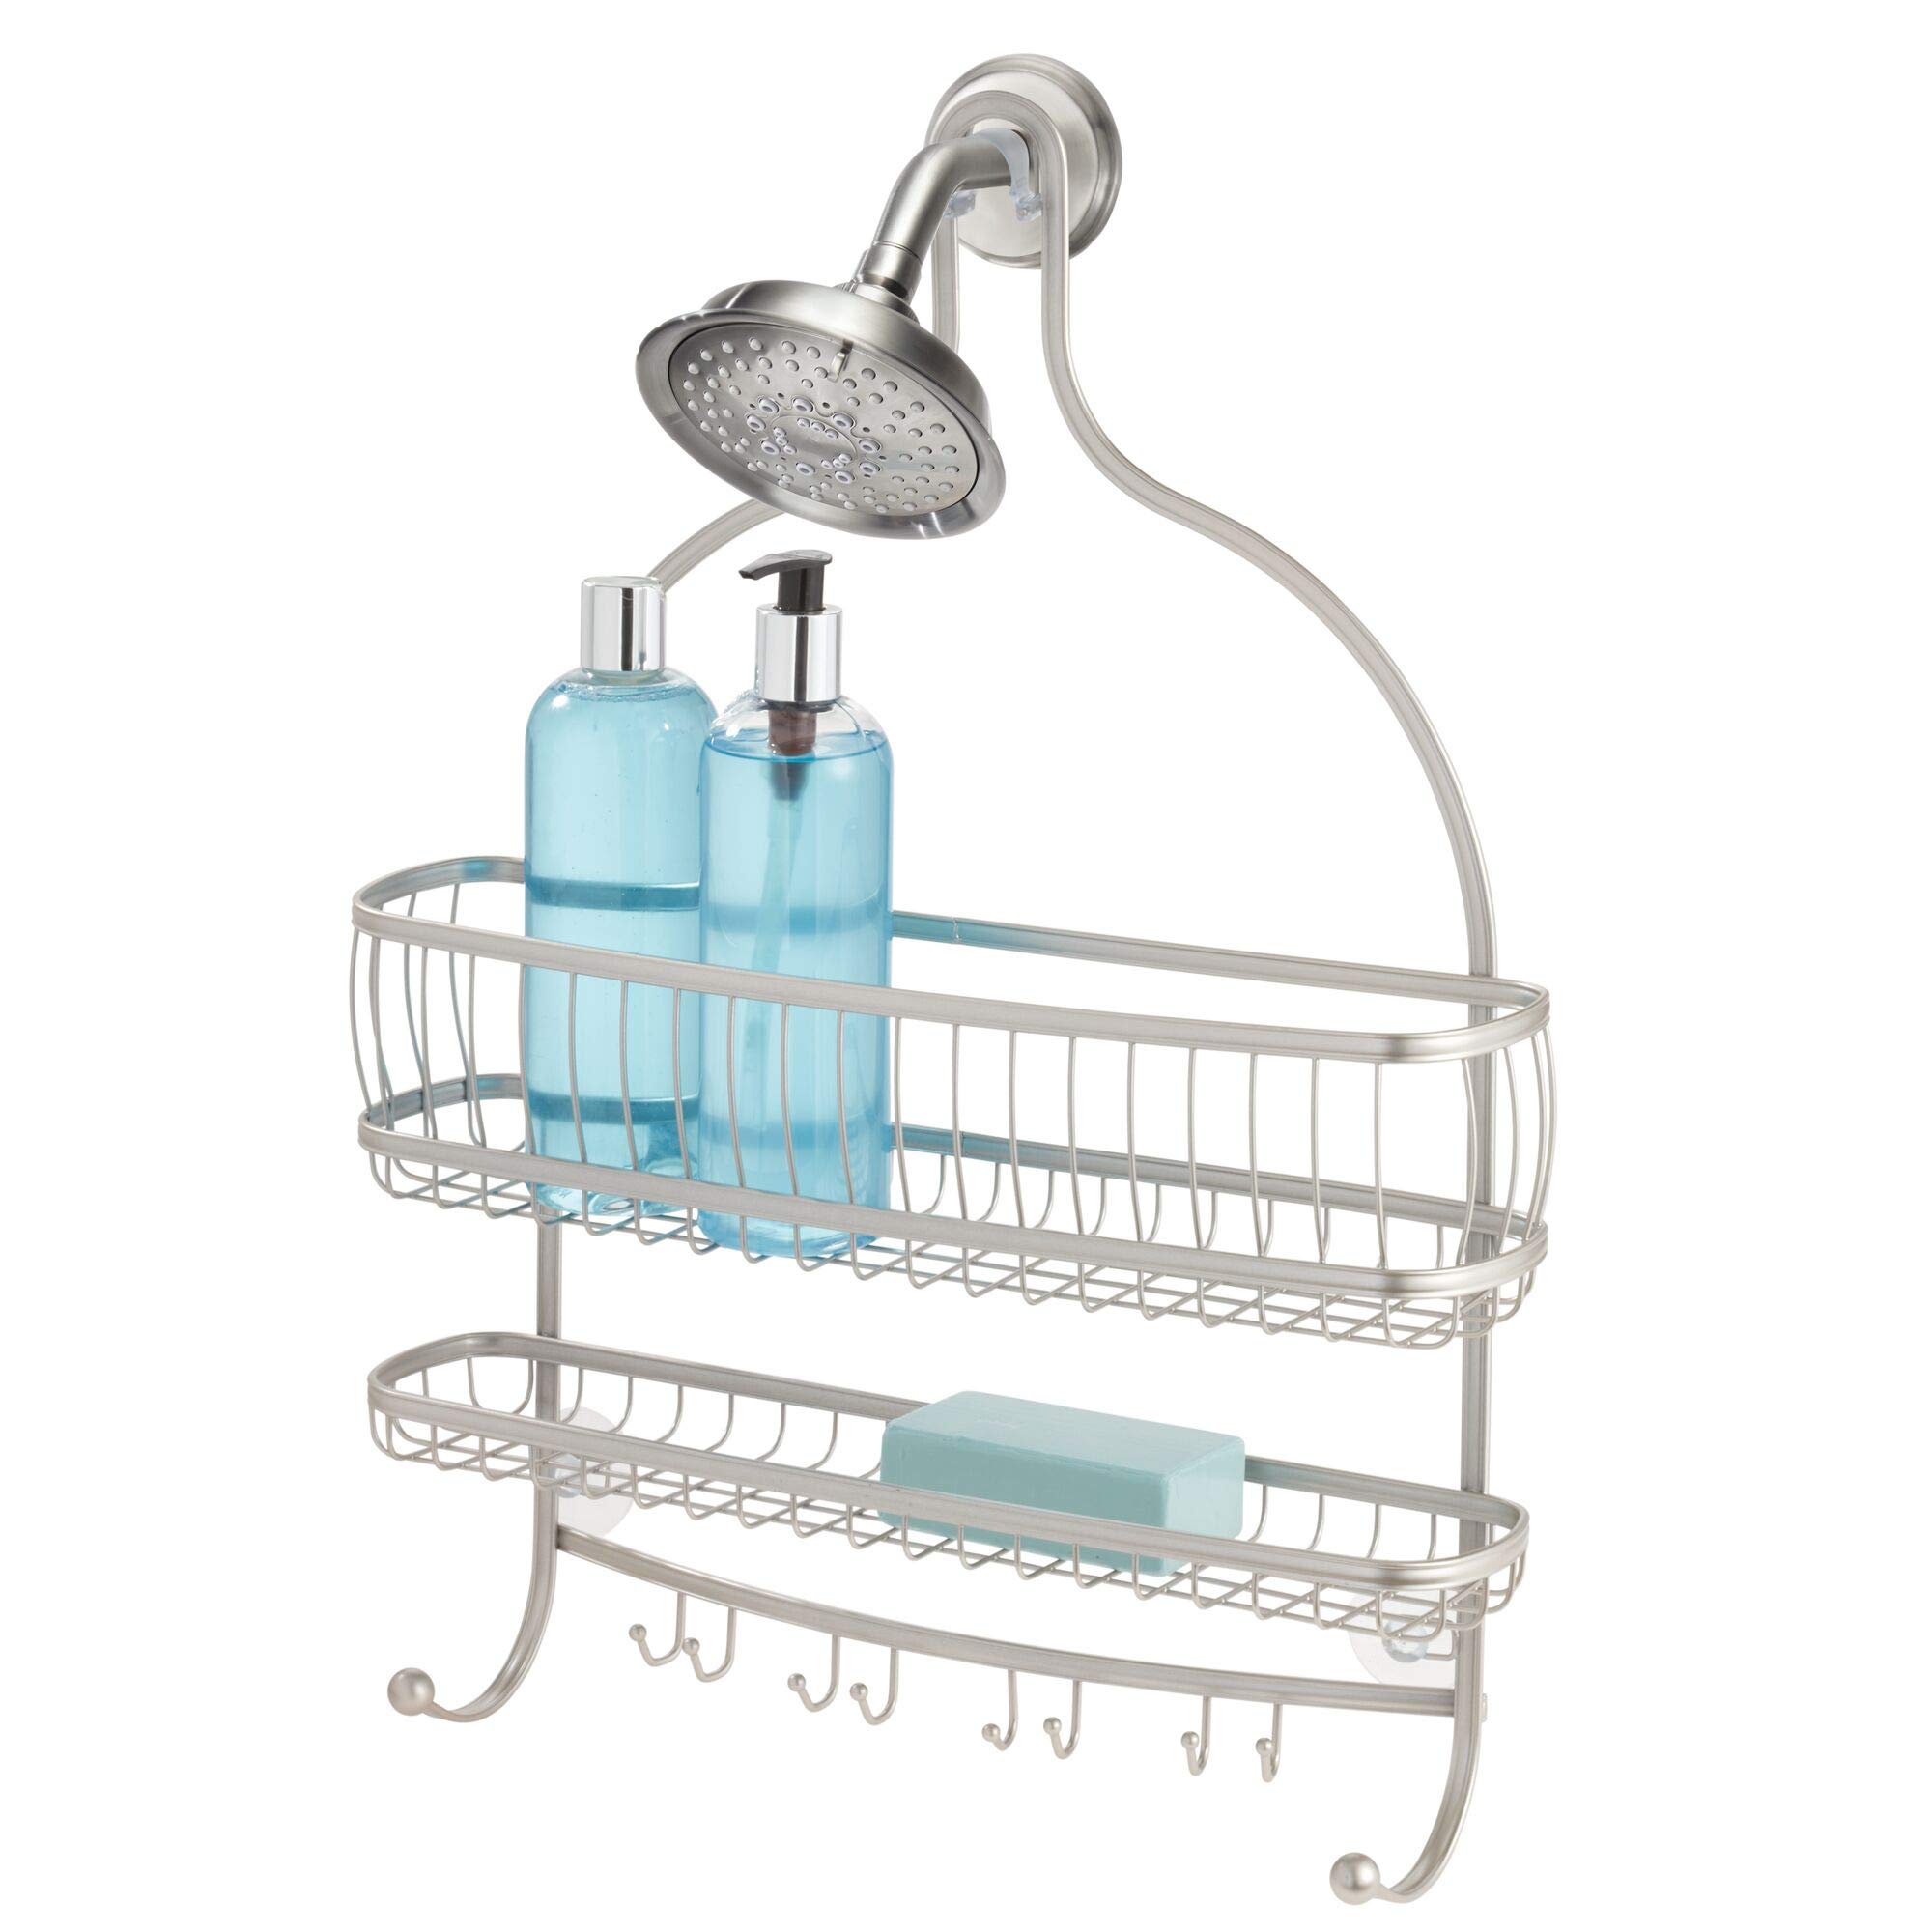 Idesign York Lyra Jumbo Hanging Shower Organizer - 16" X 4" X 22.5", Satin